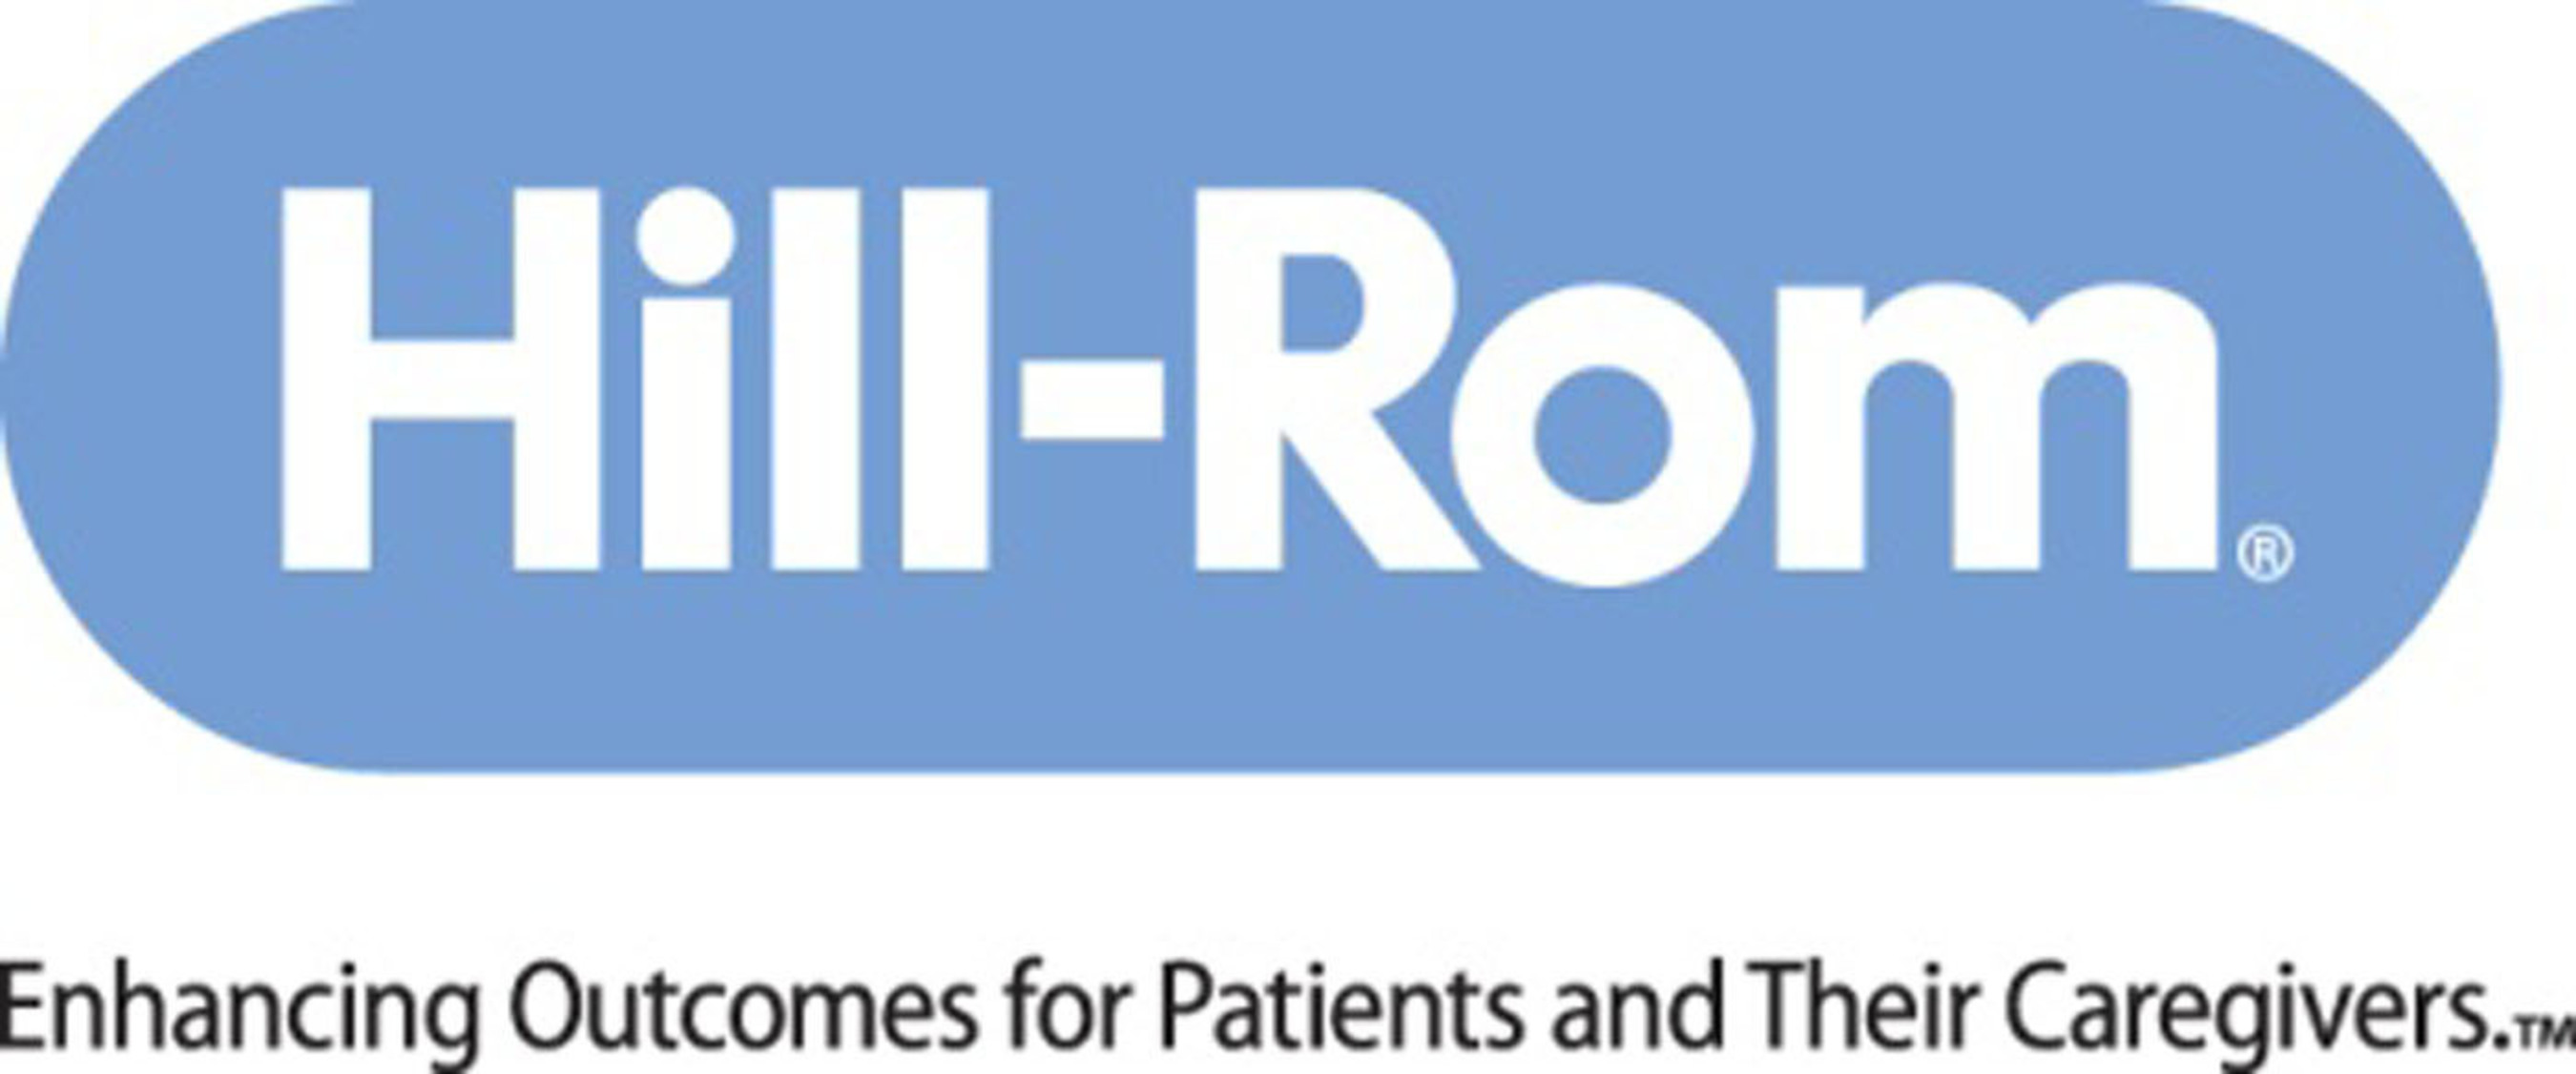 Hill-Rom Logo.